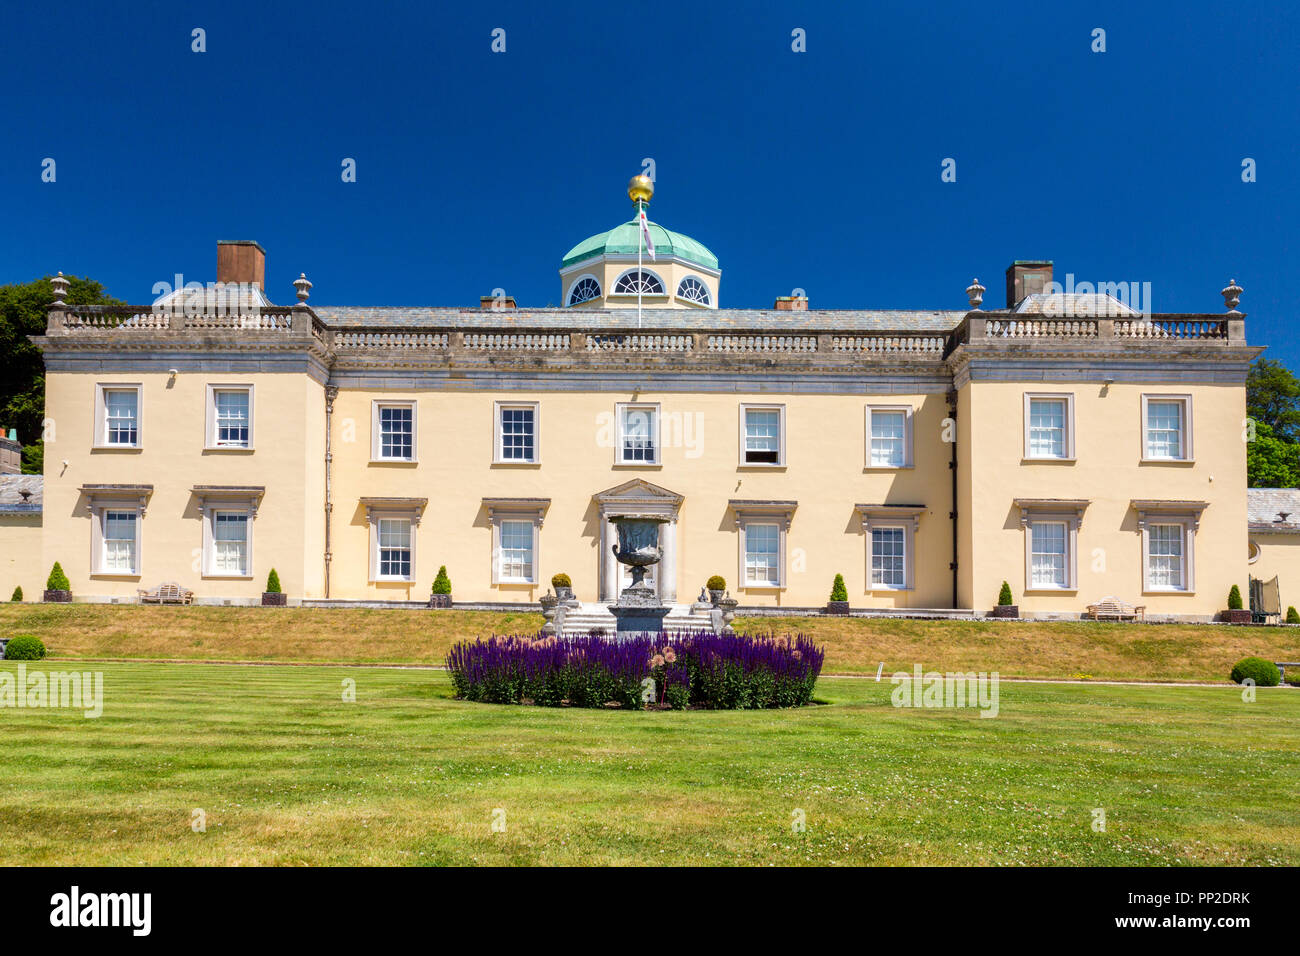 Beeindruckende palladianischen Architektur und bunten Pflanzen bei Castle Hill House und Gärten, in der Nähe von Filleigh, Devon, England, Großbritannien Stockfoto